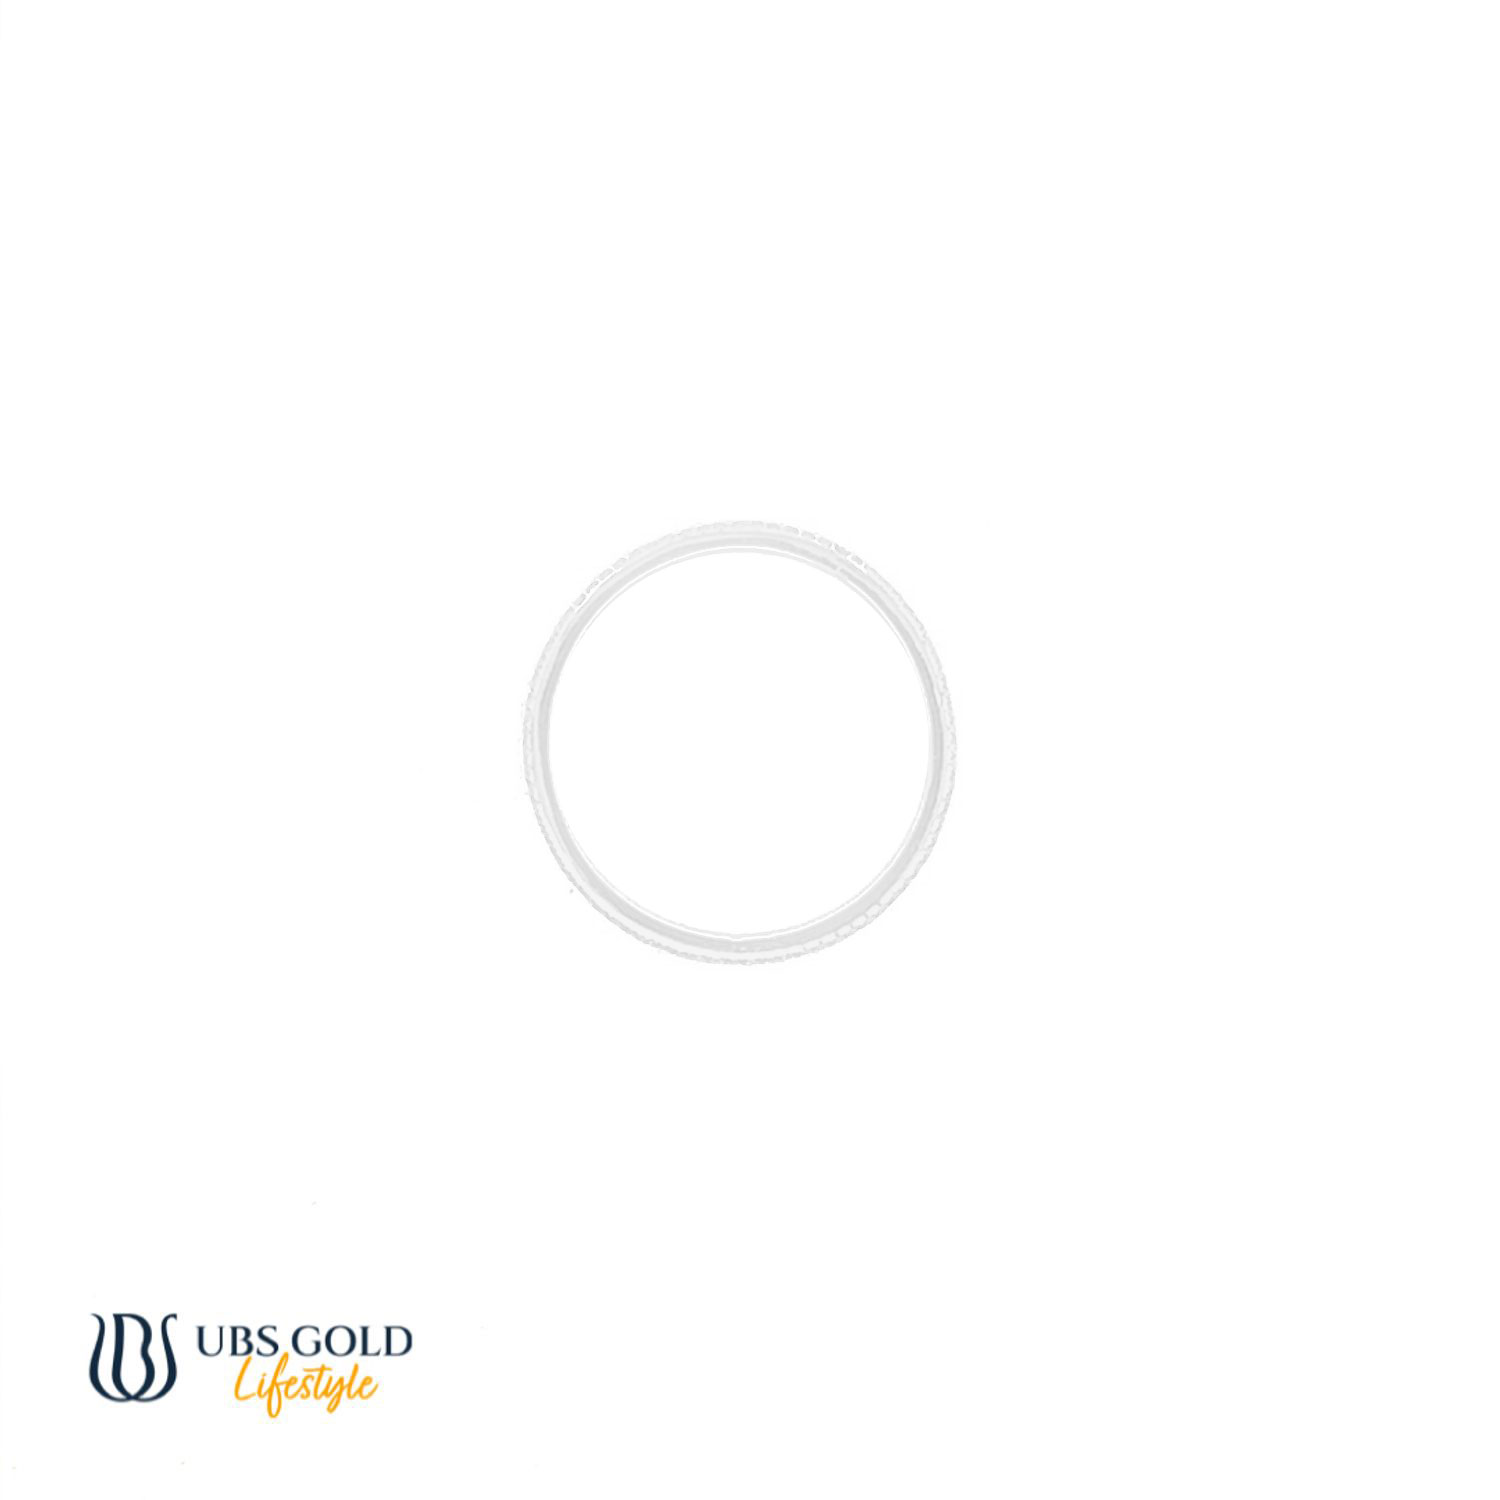 UBS Gold Cincin Emas - Cc16917 - 17K